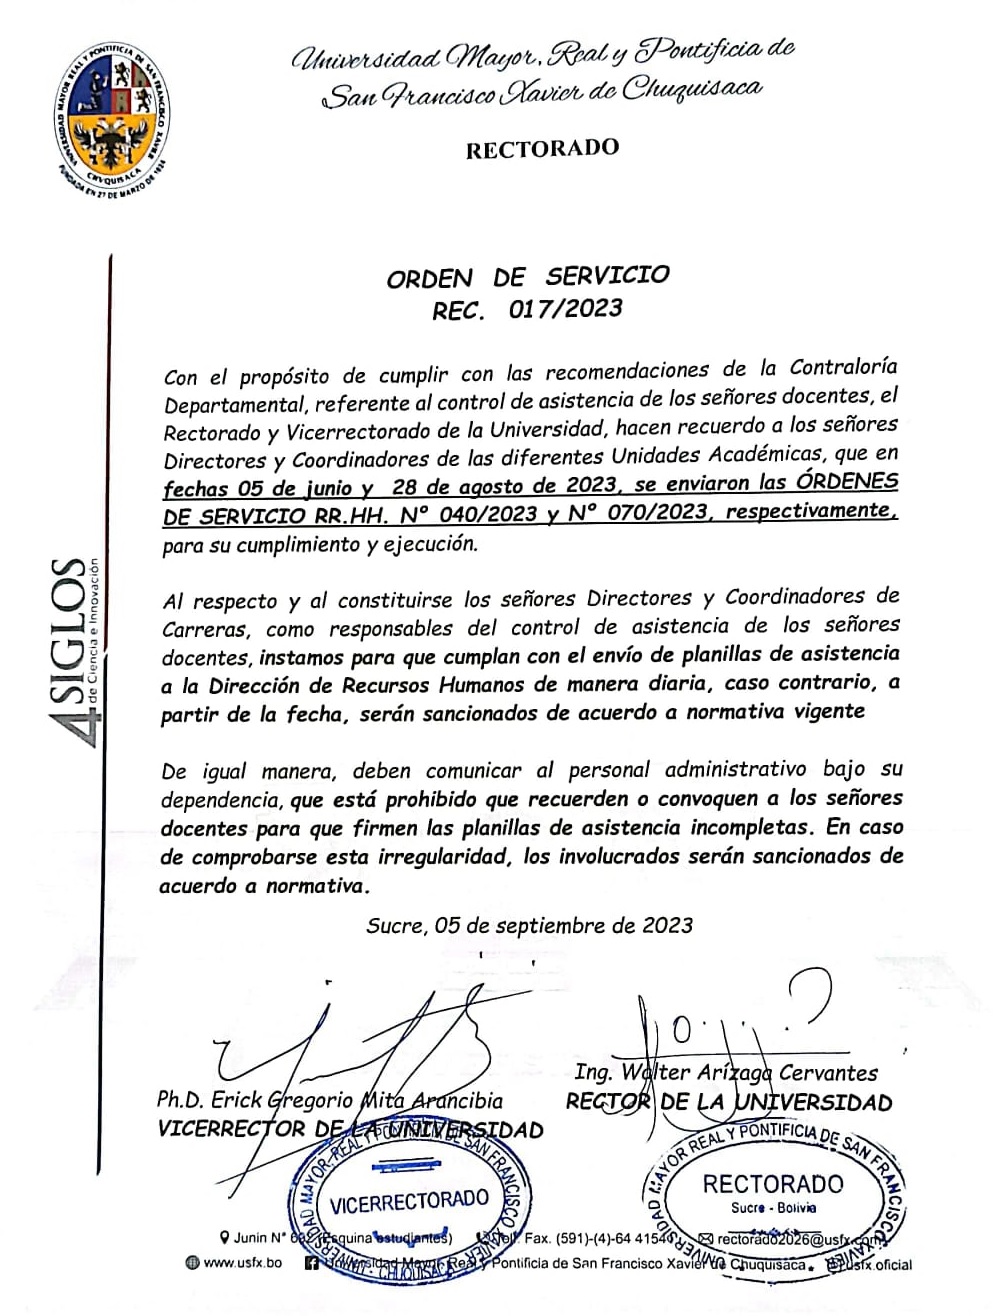 ORDEN DE SERVICIO REC. Nº 017/2023, CONTROL DE ASISTENCIA SEÑORES DOCENTES.